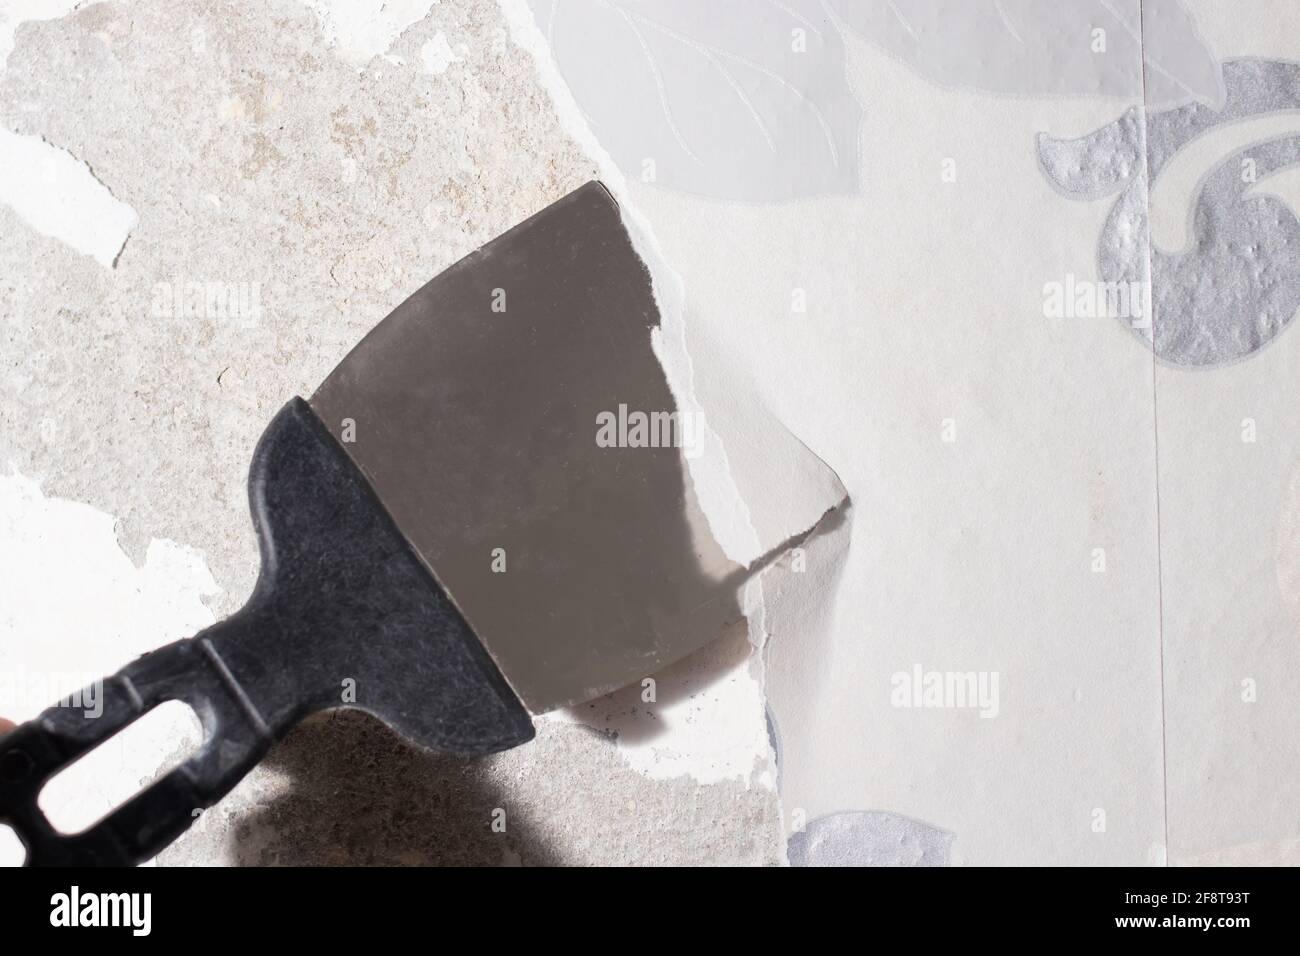 Le réparateur retire le papier peint bancal usagé du mur à l'aide d'une spatule. Élimination des résidus de papier peint pendant les réparations. Banque D'Images